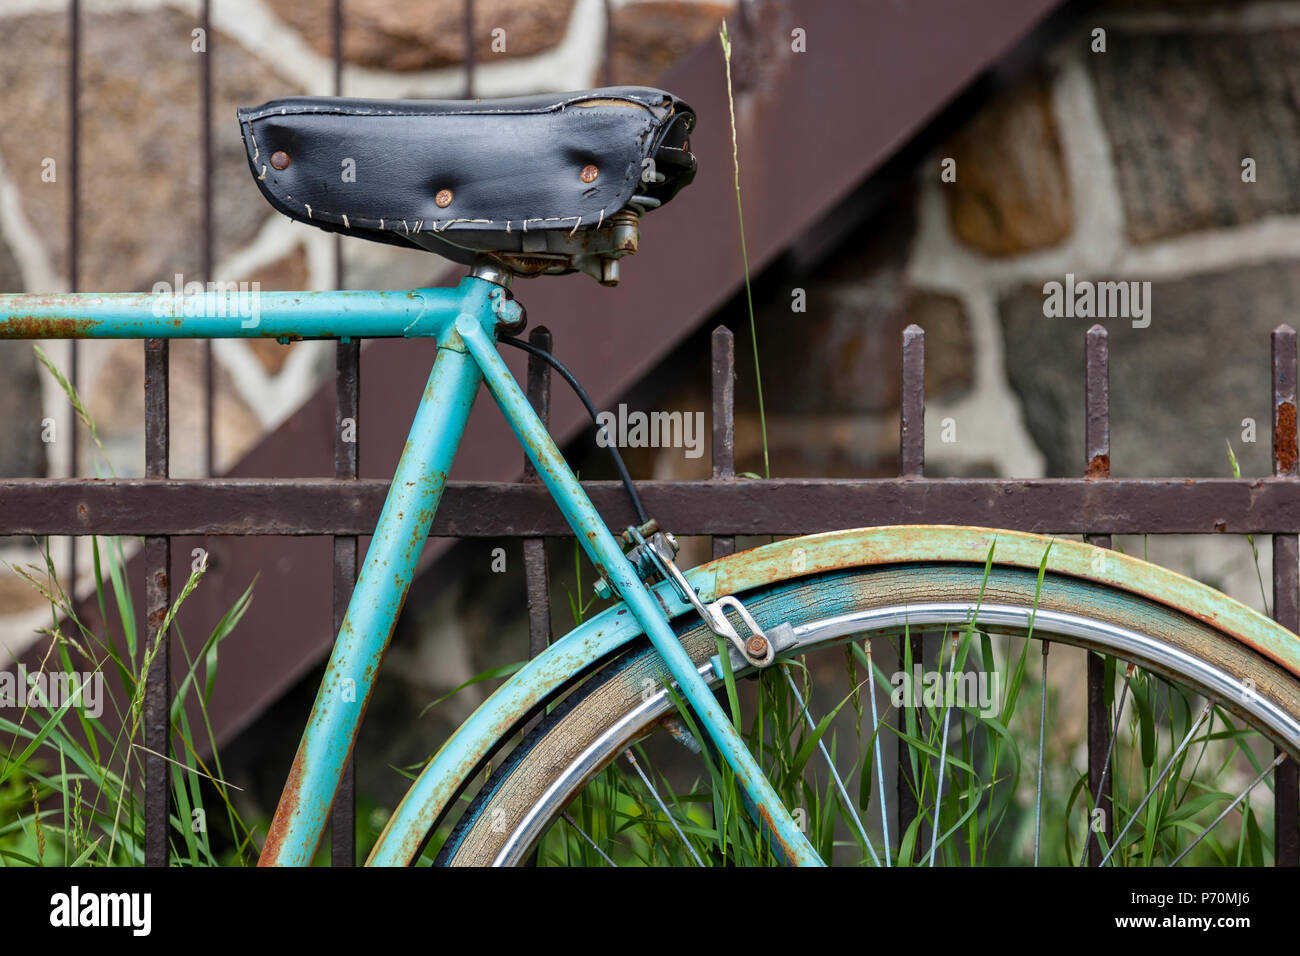 Libre d'une roue de vélo et le siège s'appuyant sur une clôture rouillée. Banque D'Images